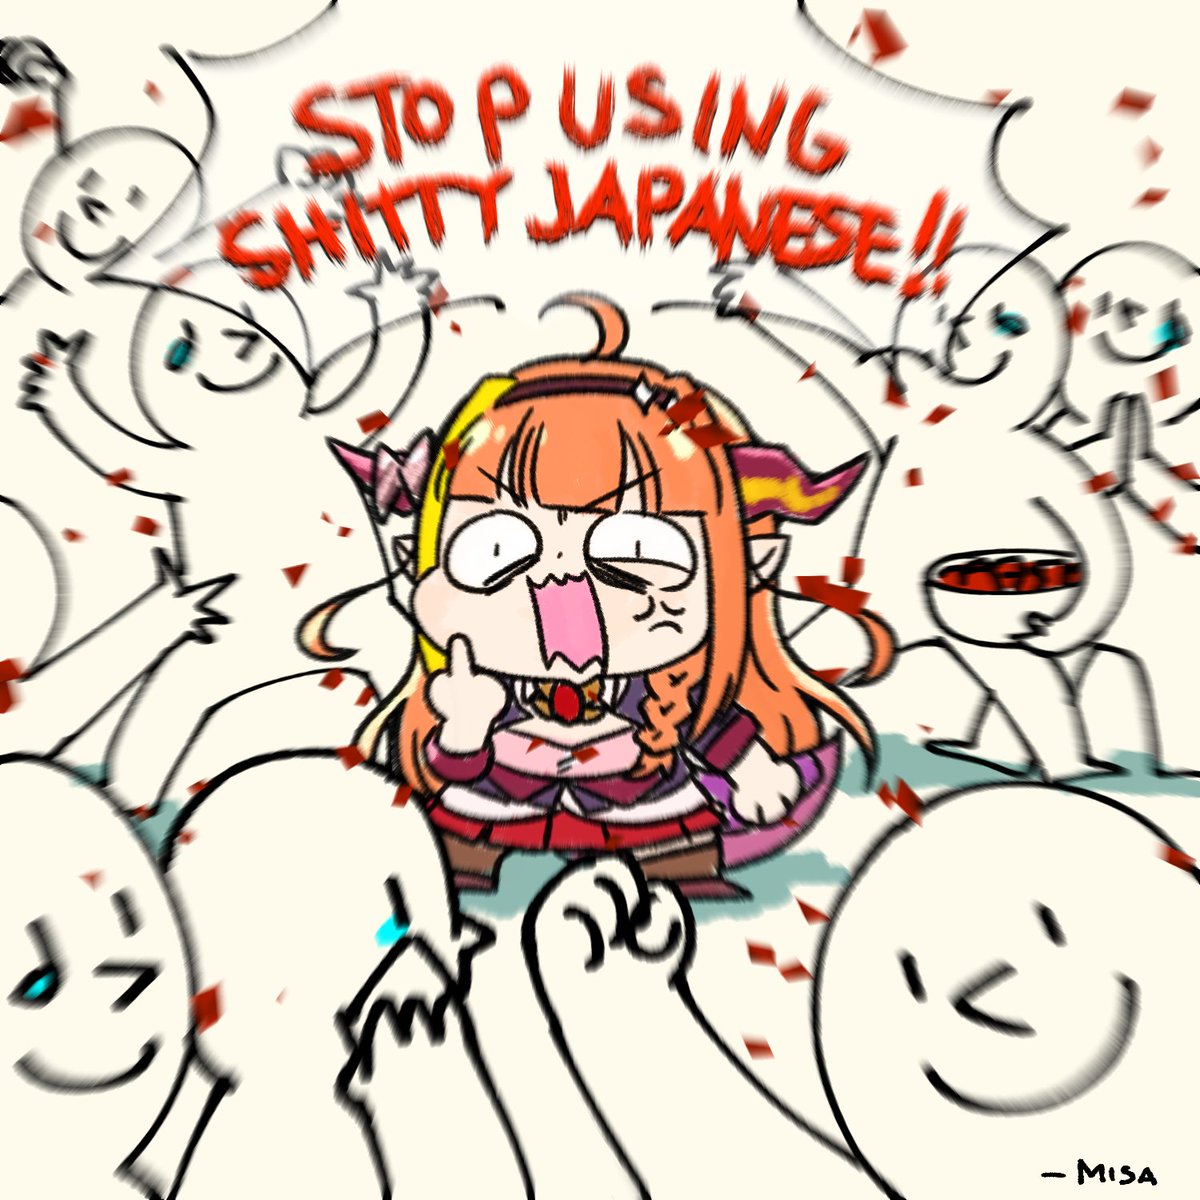 おkaえりnasァいi Kai長!
we missed ya. Here's to more shitty Japanese memes!
#みかじ絵 